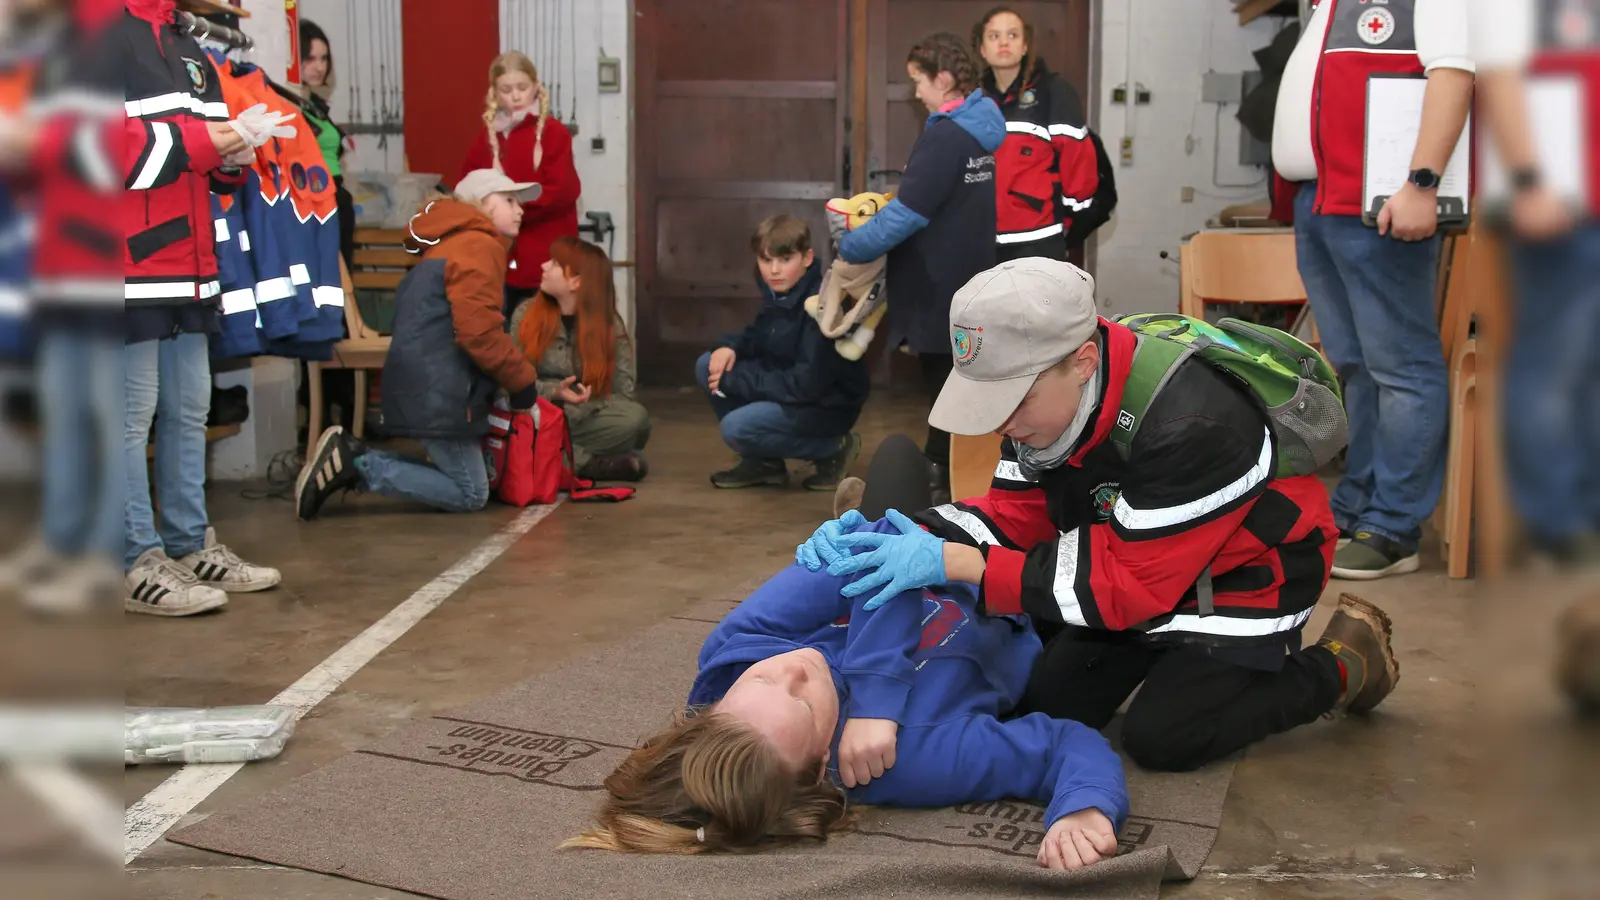 Darsteller spielen die Verletzten, die Jugendrotkreuzler müssen ihnen im Zusammenspiel als Team Hilfe leisten. (Foto: Borchers, Bastian)